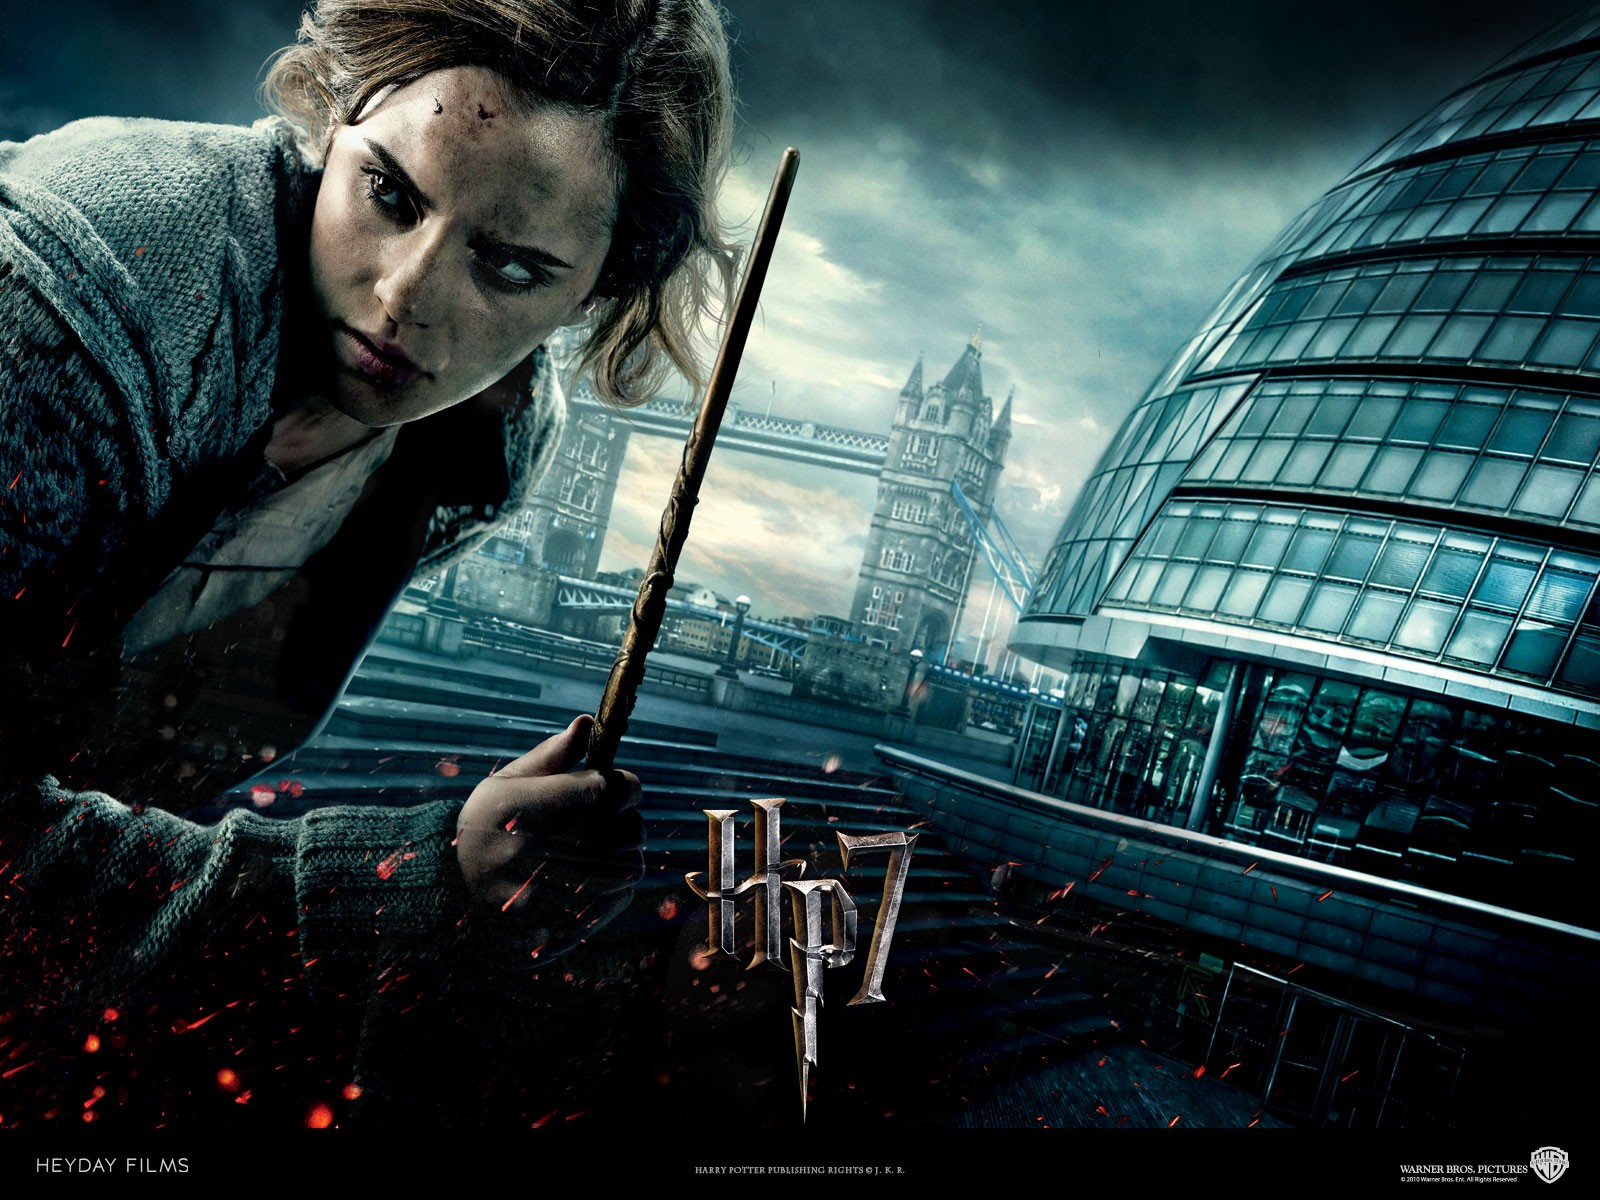 Hermione Granger portrayed by Emma Watson in high definition desktop wallpaper.